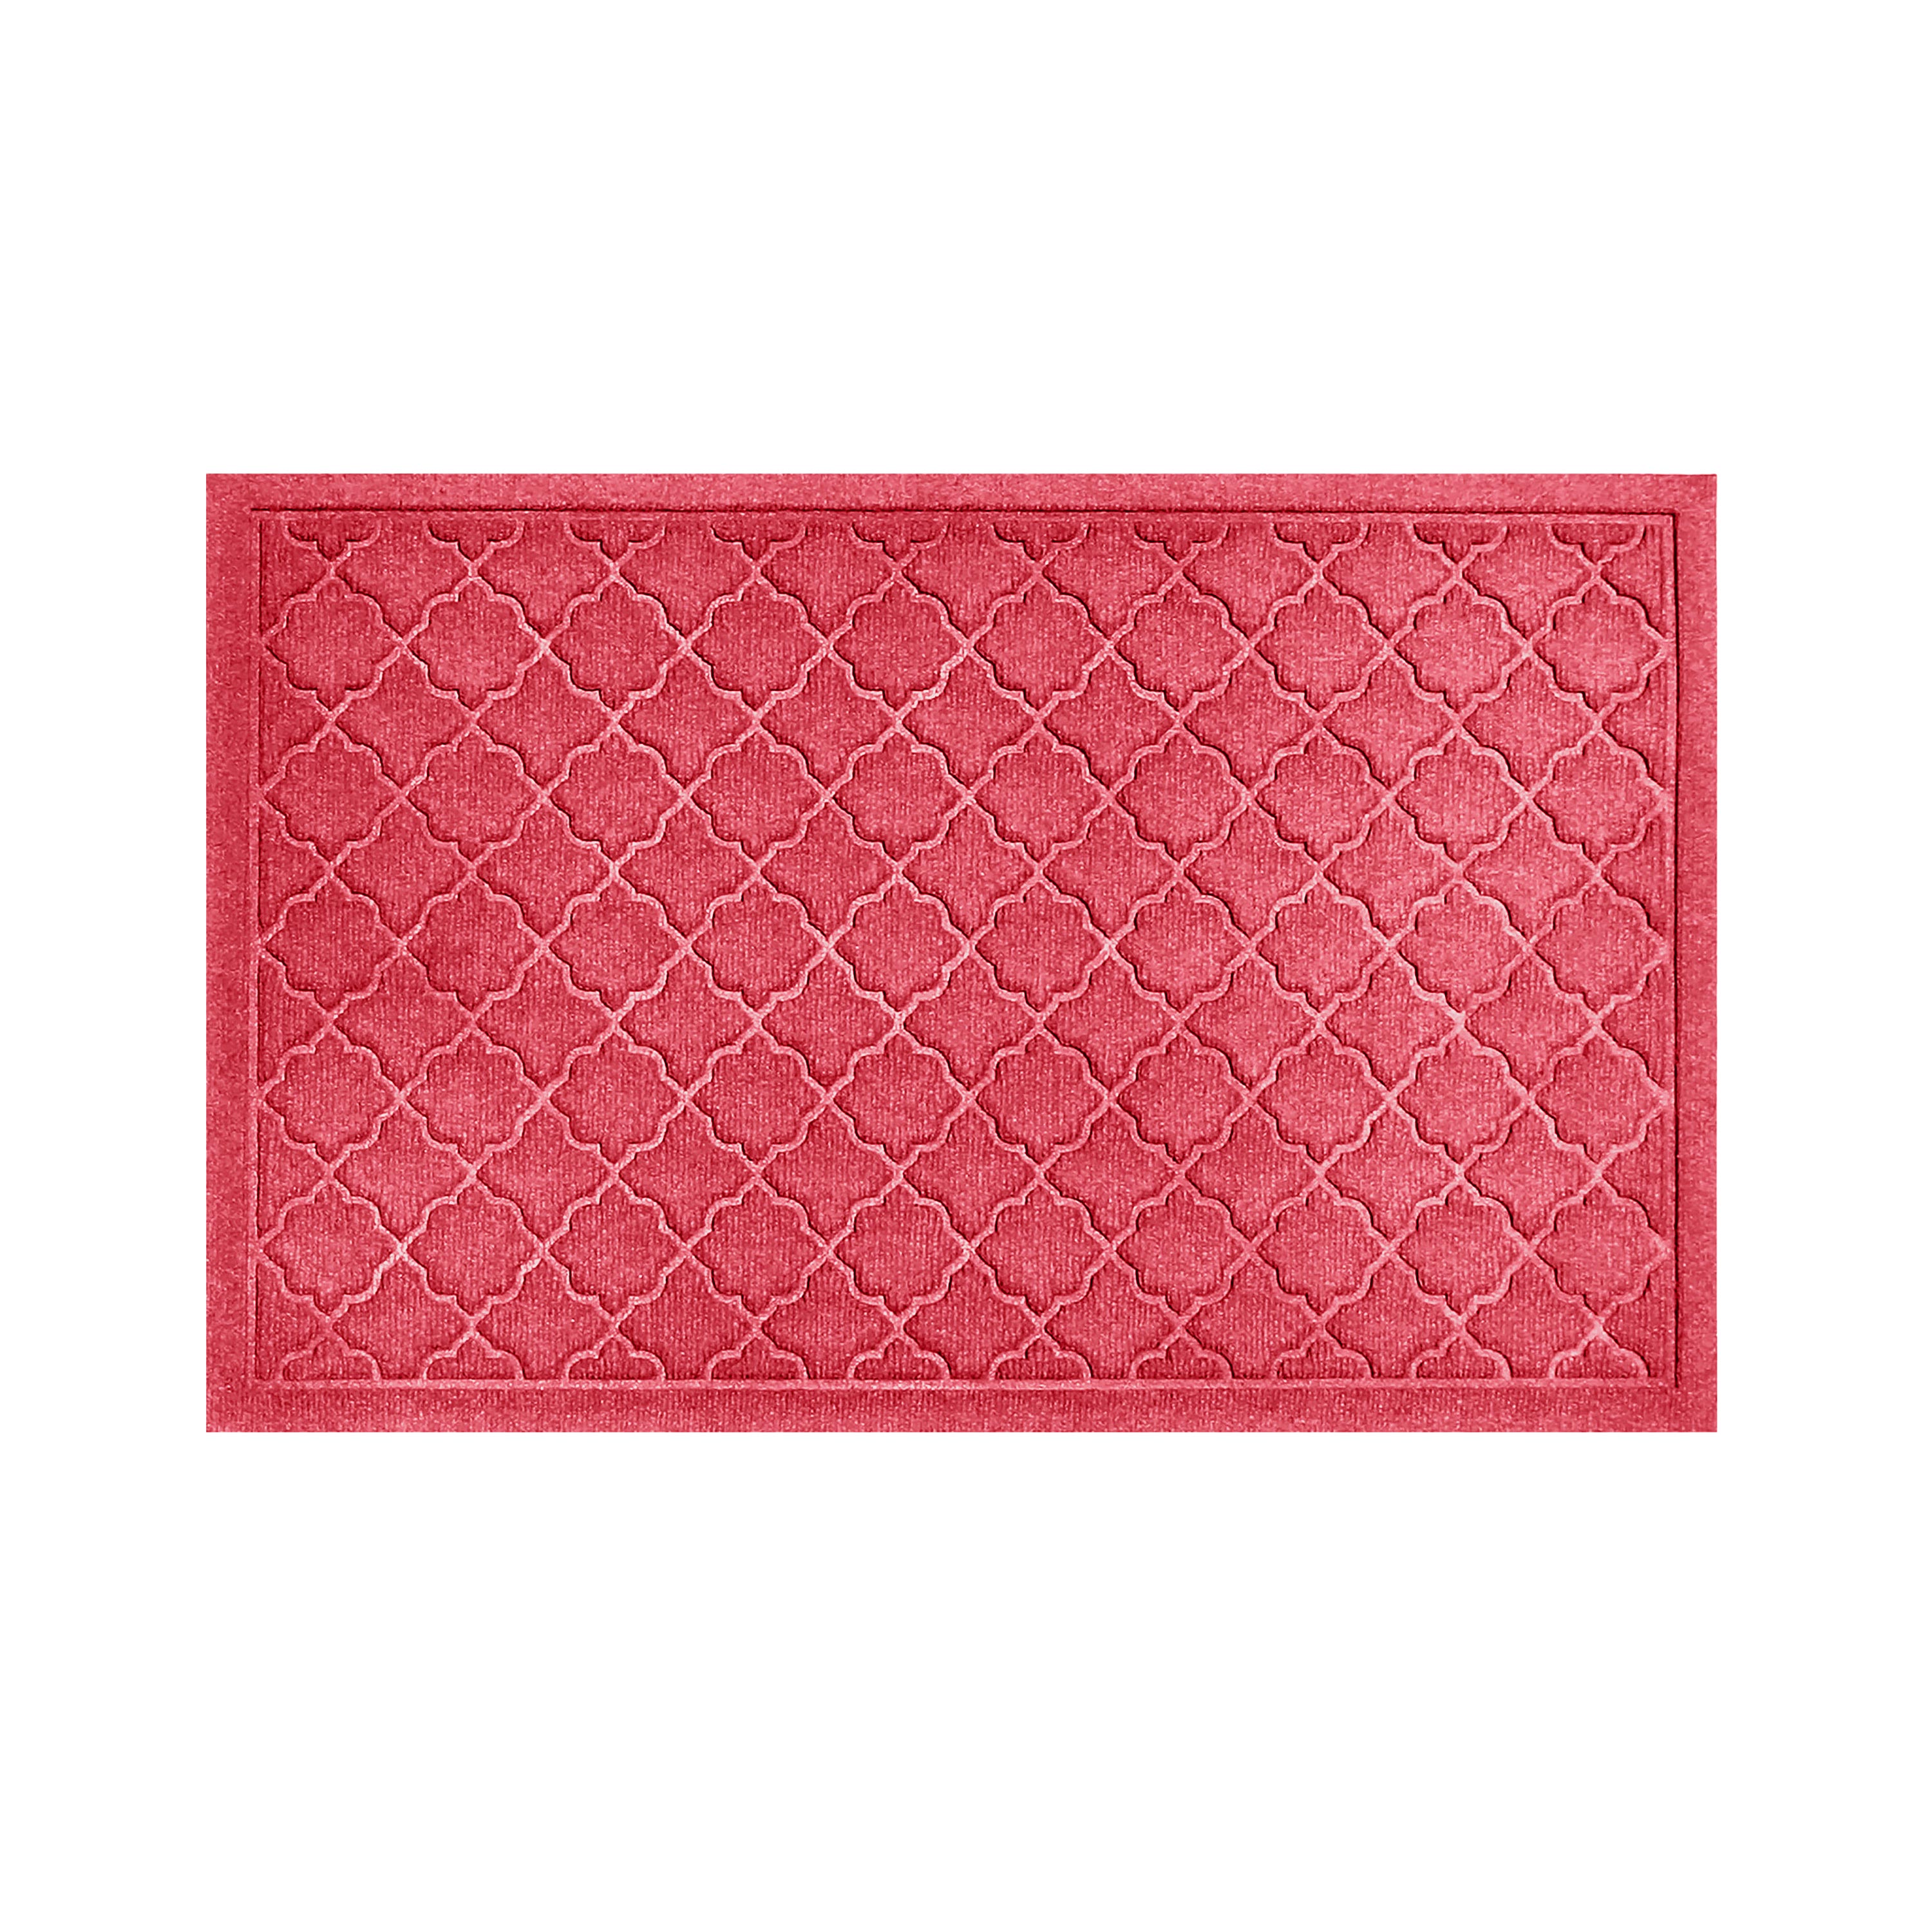 Waterhog Indoor/Outdoor Geometric Doormat, 22" x 60" - Red